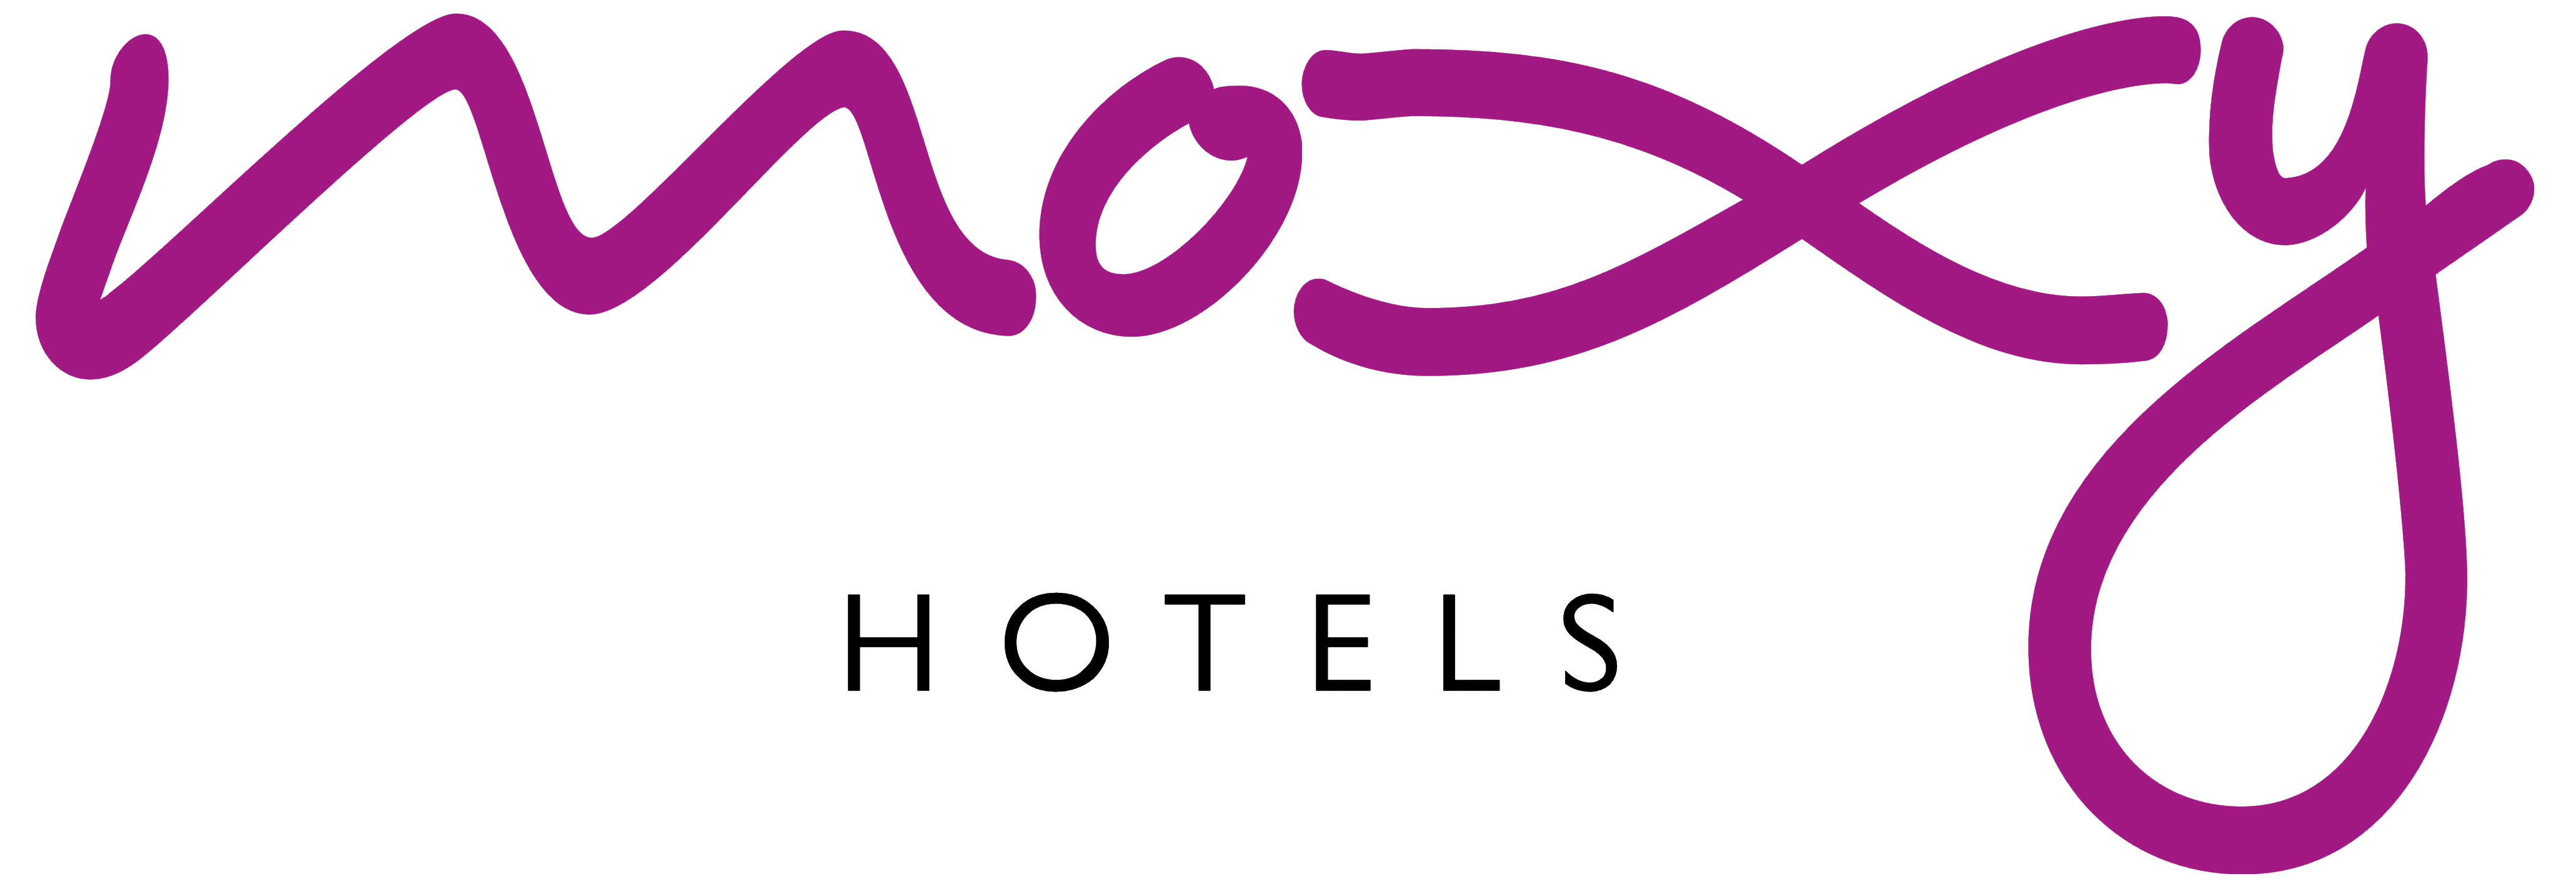 Moxy_Hotels_logo_logotype